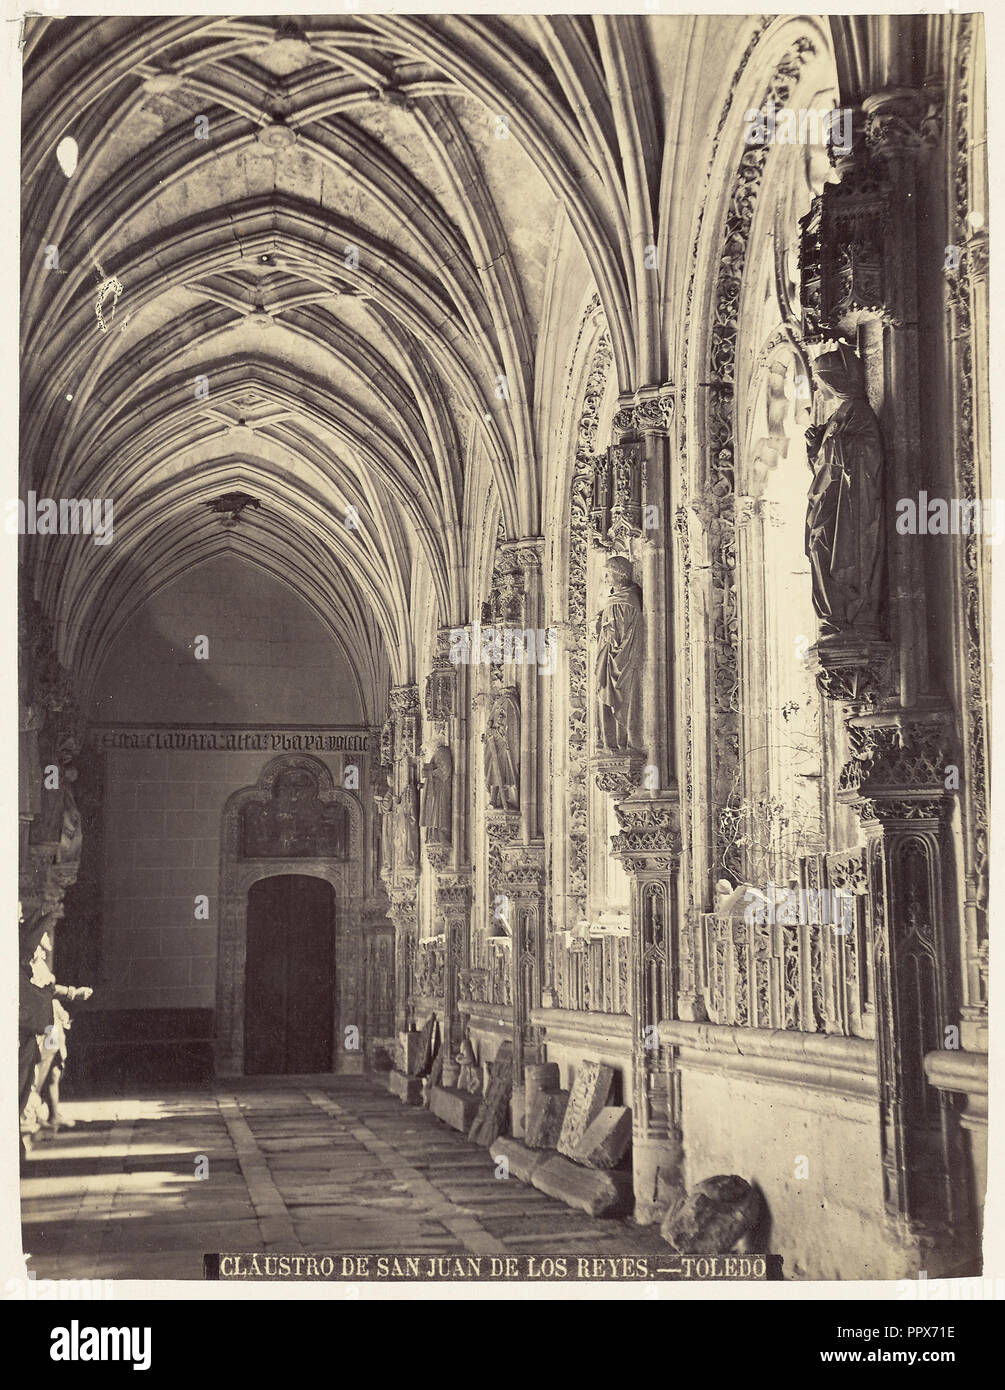 Claustro de San Juan de los Reyes; Casiano Alguacil, Spanish, 1832 - 1914, Toledo, Spain; 1875; Albumen silver print Stock Photo